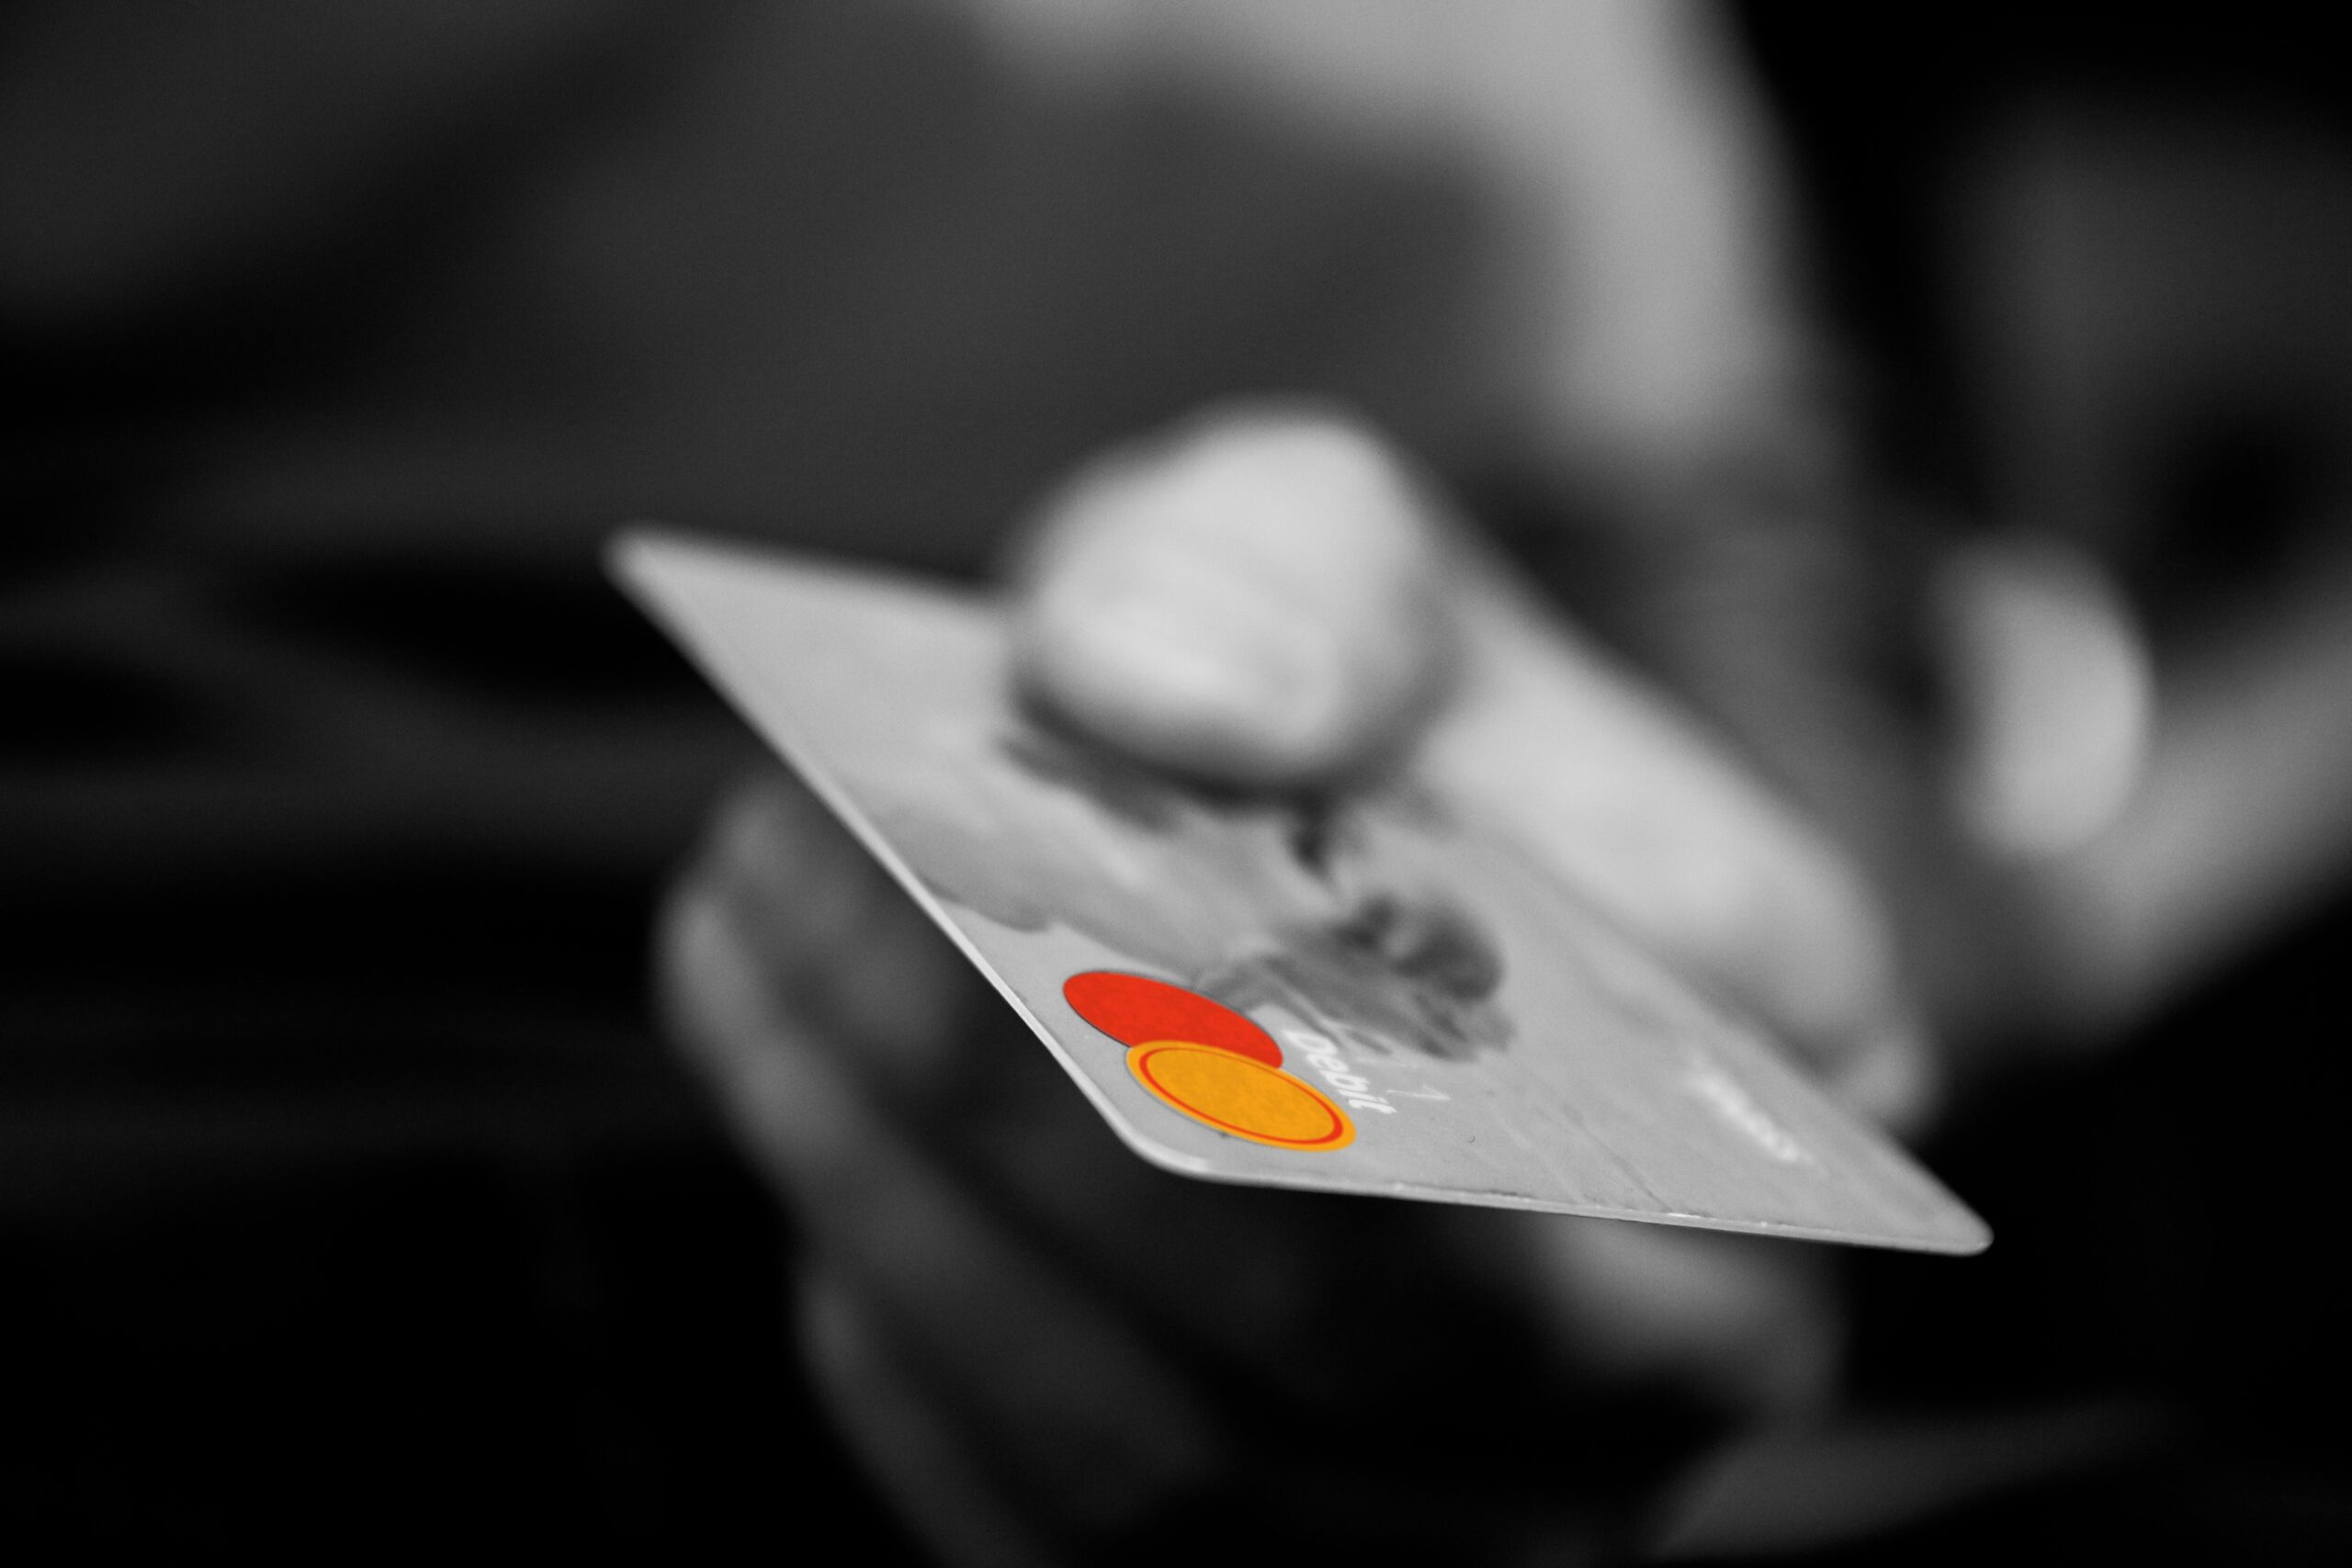 dívidas: mão segurando cartão de crédito